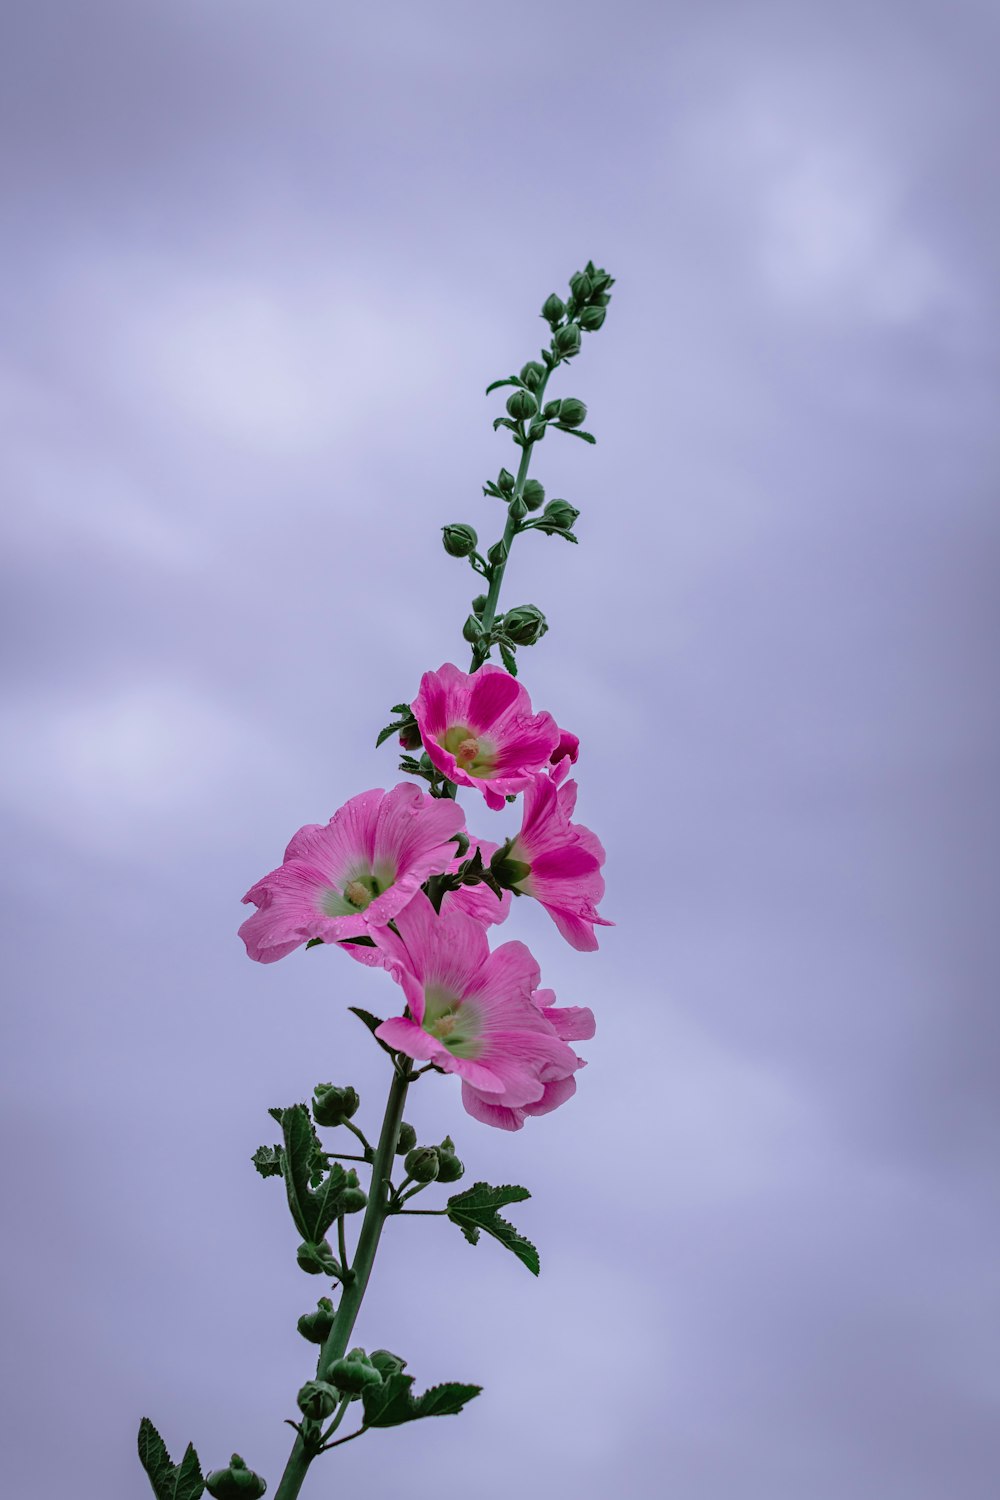 flor cor-de-rosa sob o céu nublado durante o dia